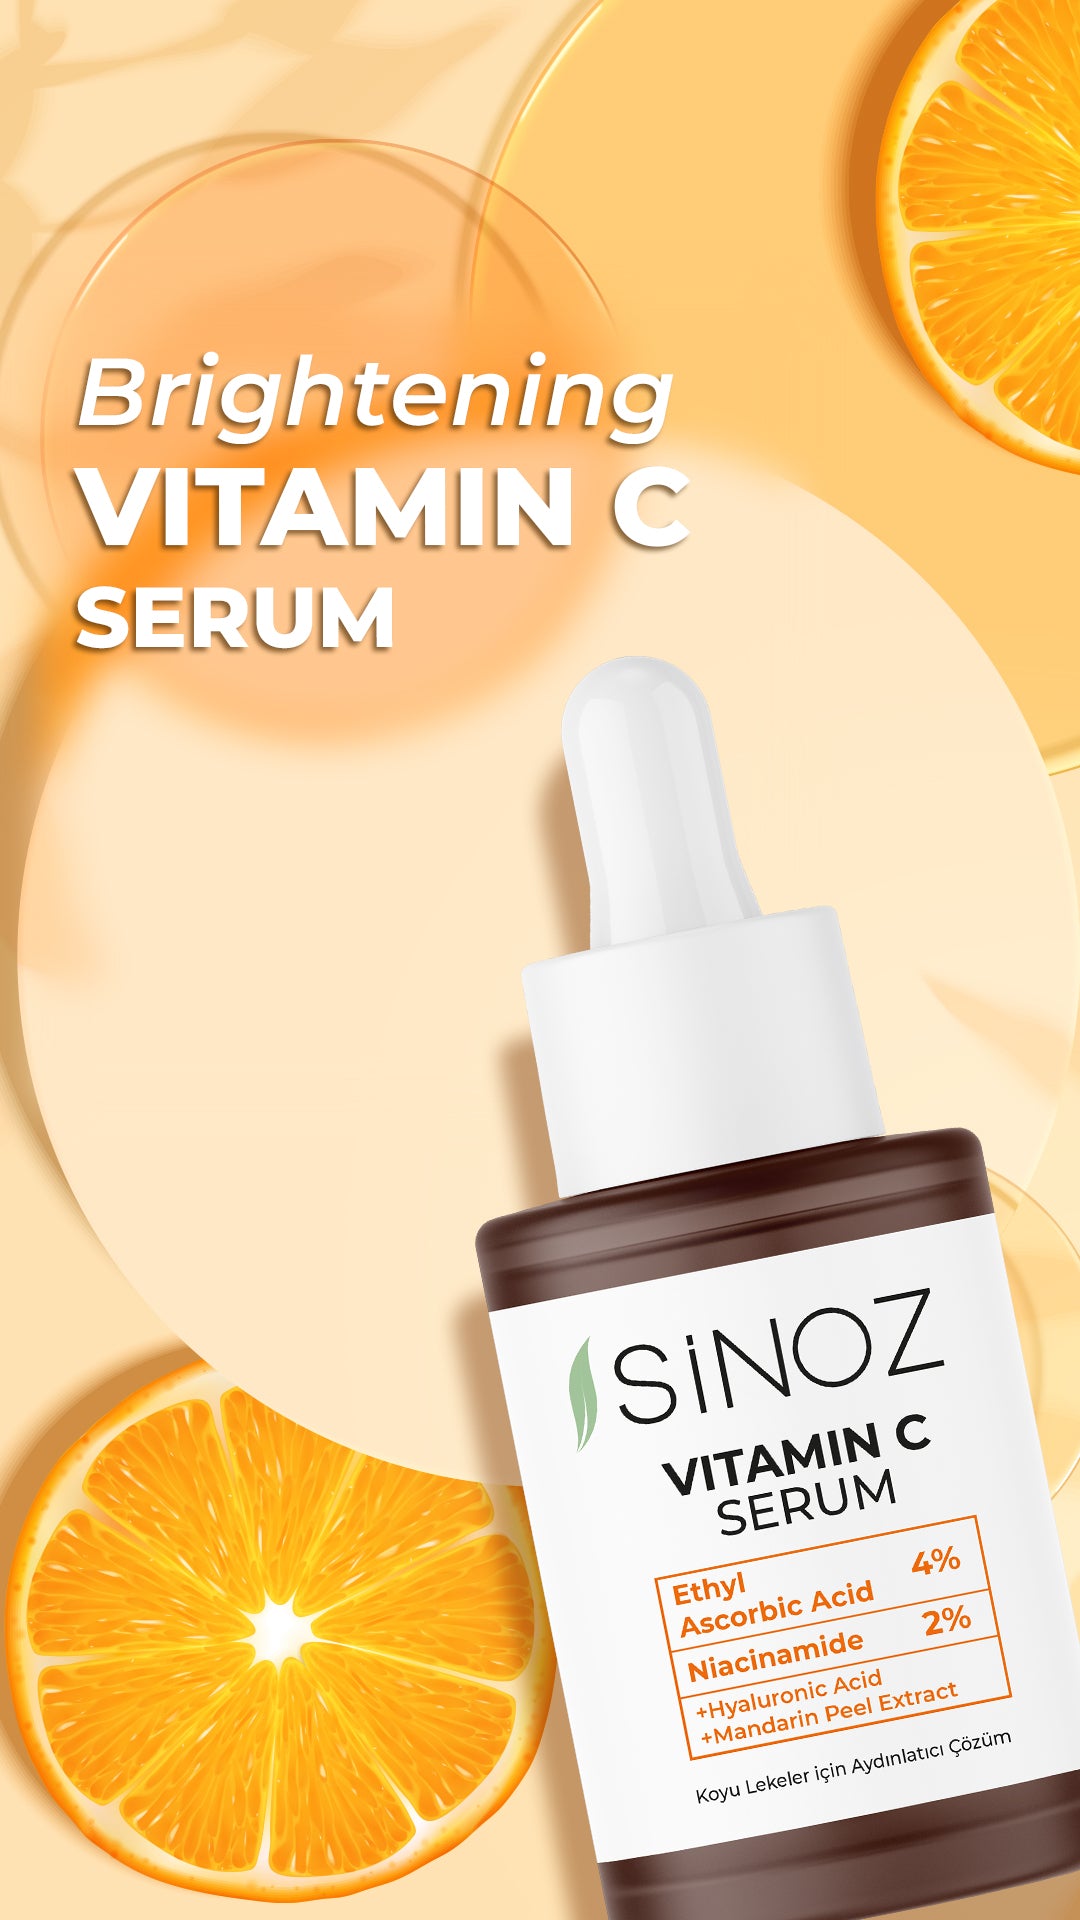 Sinoz Vitamin C Serum